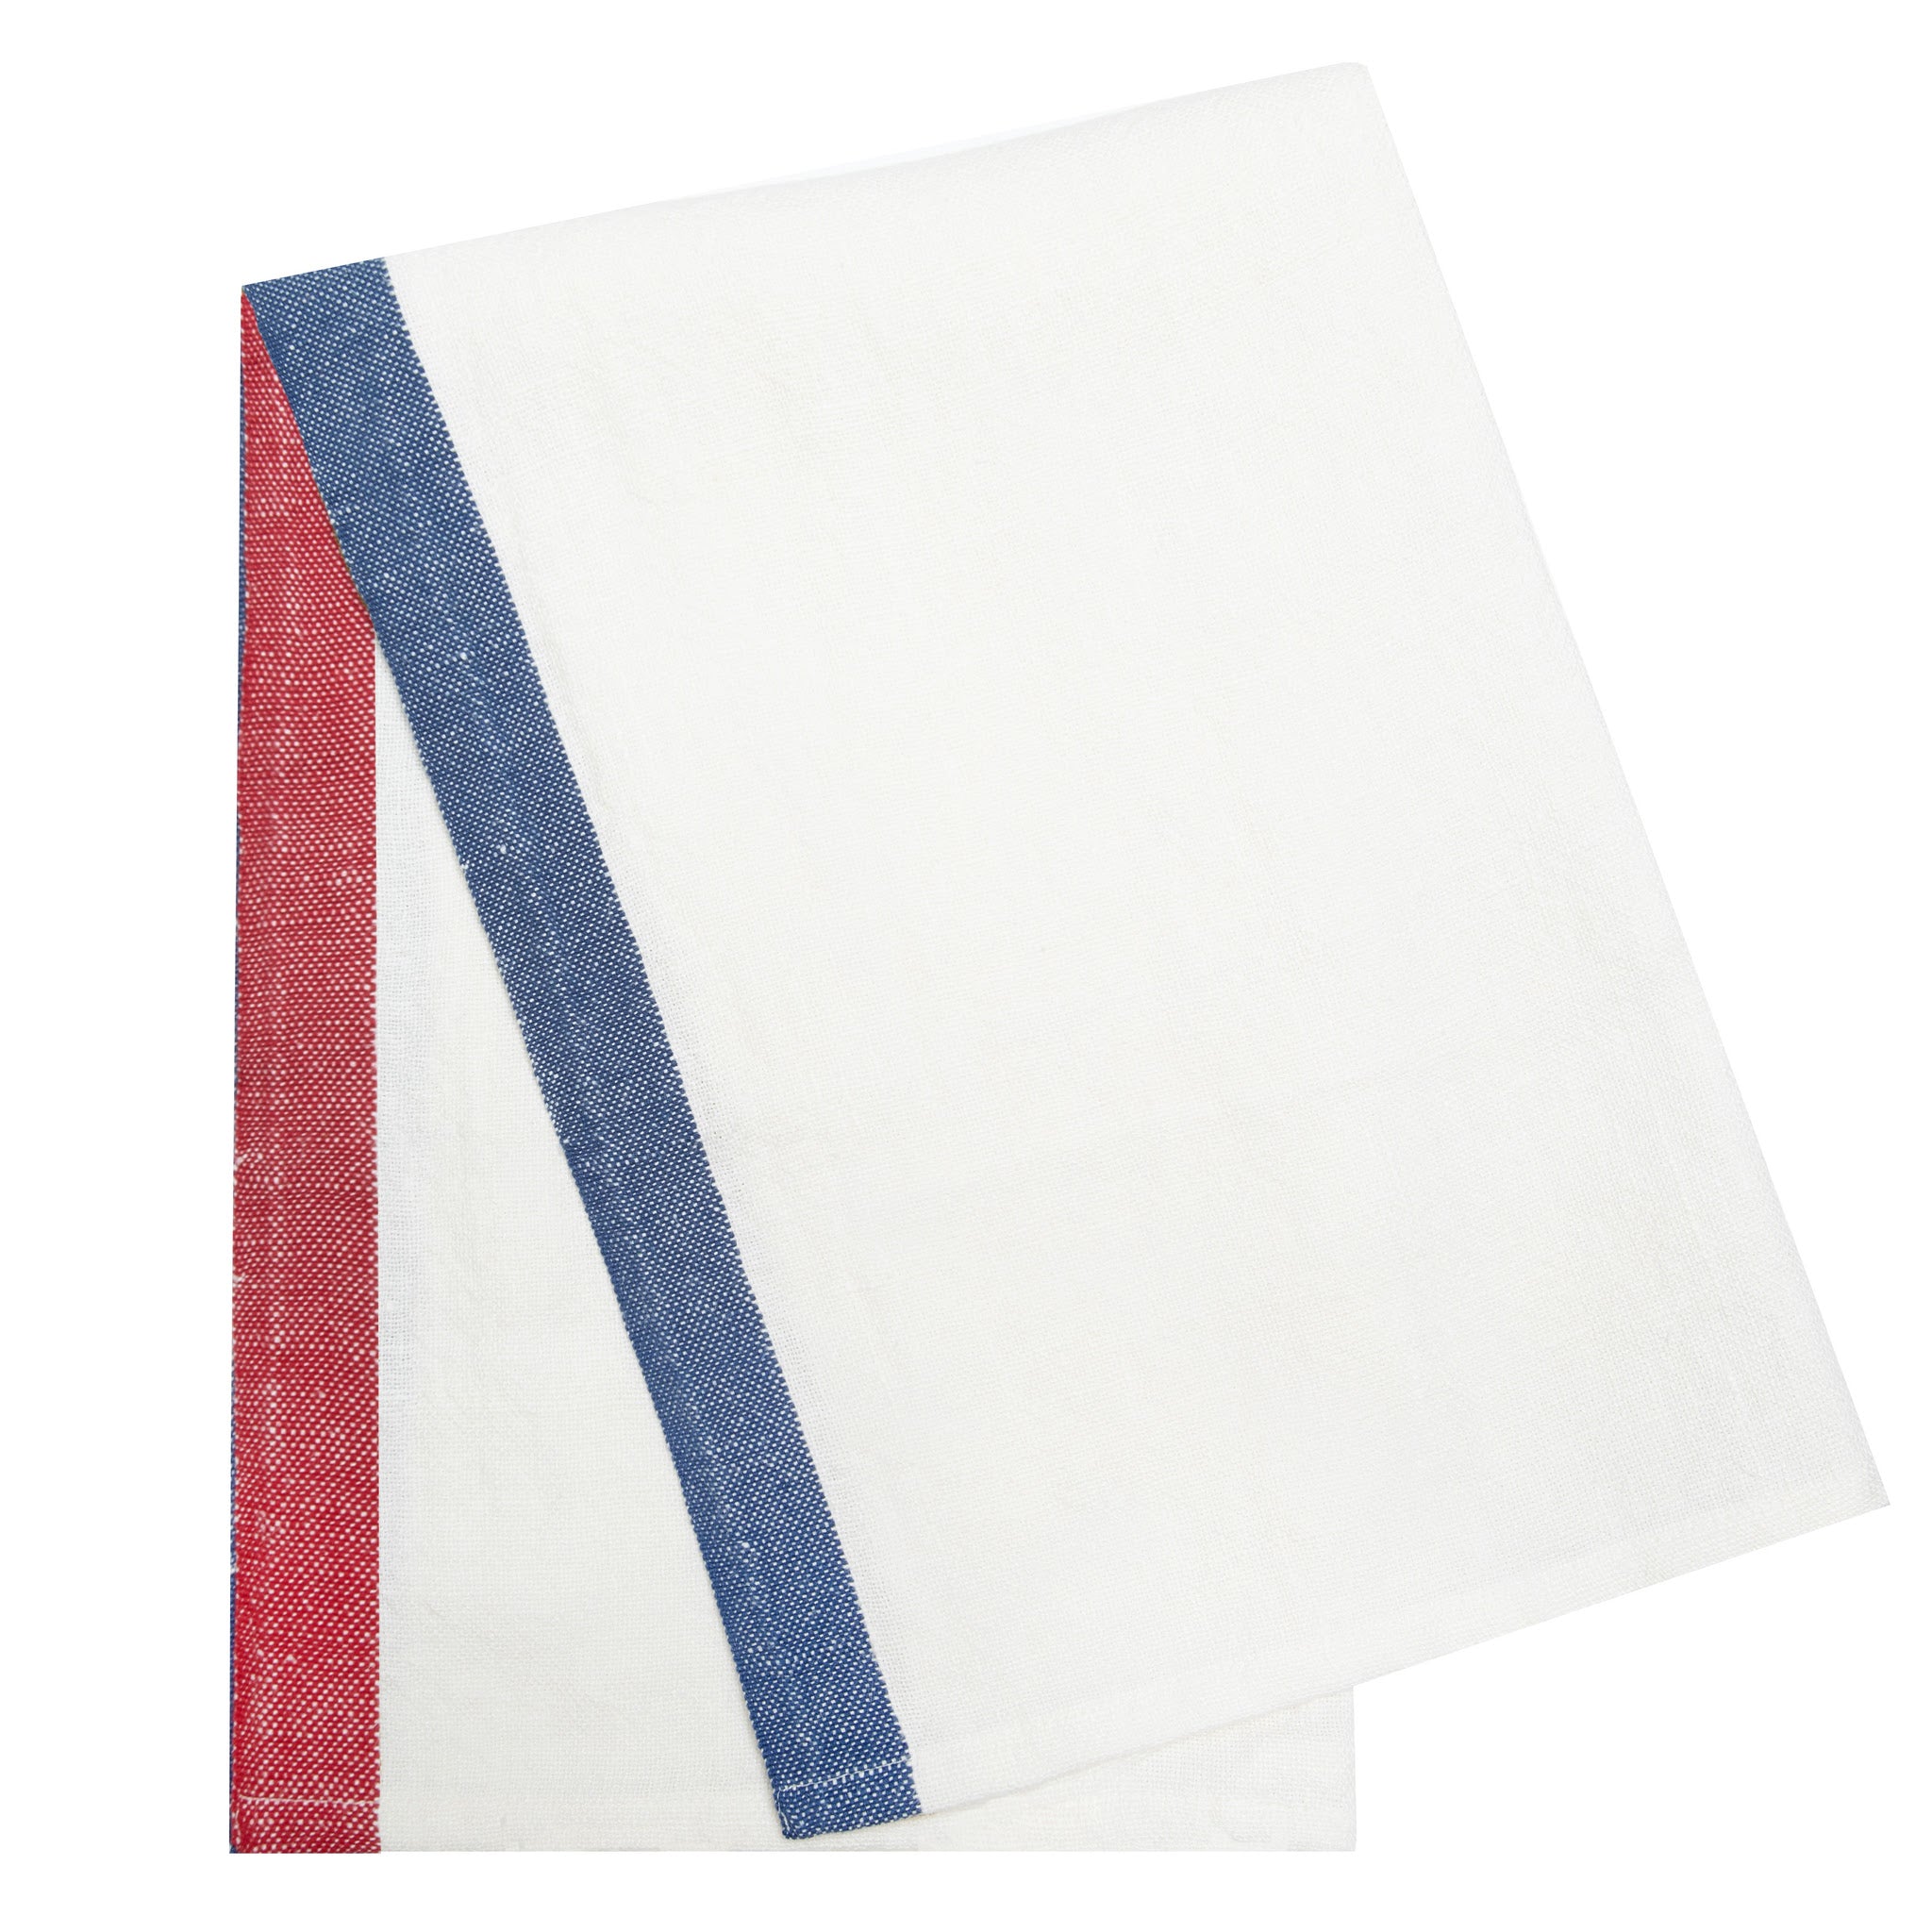 Paris White - Tea Towels 20x30 - Set of 2